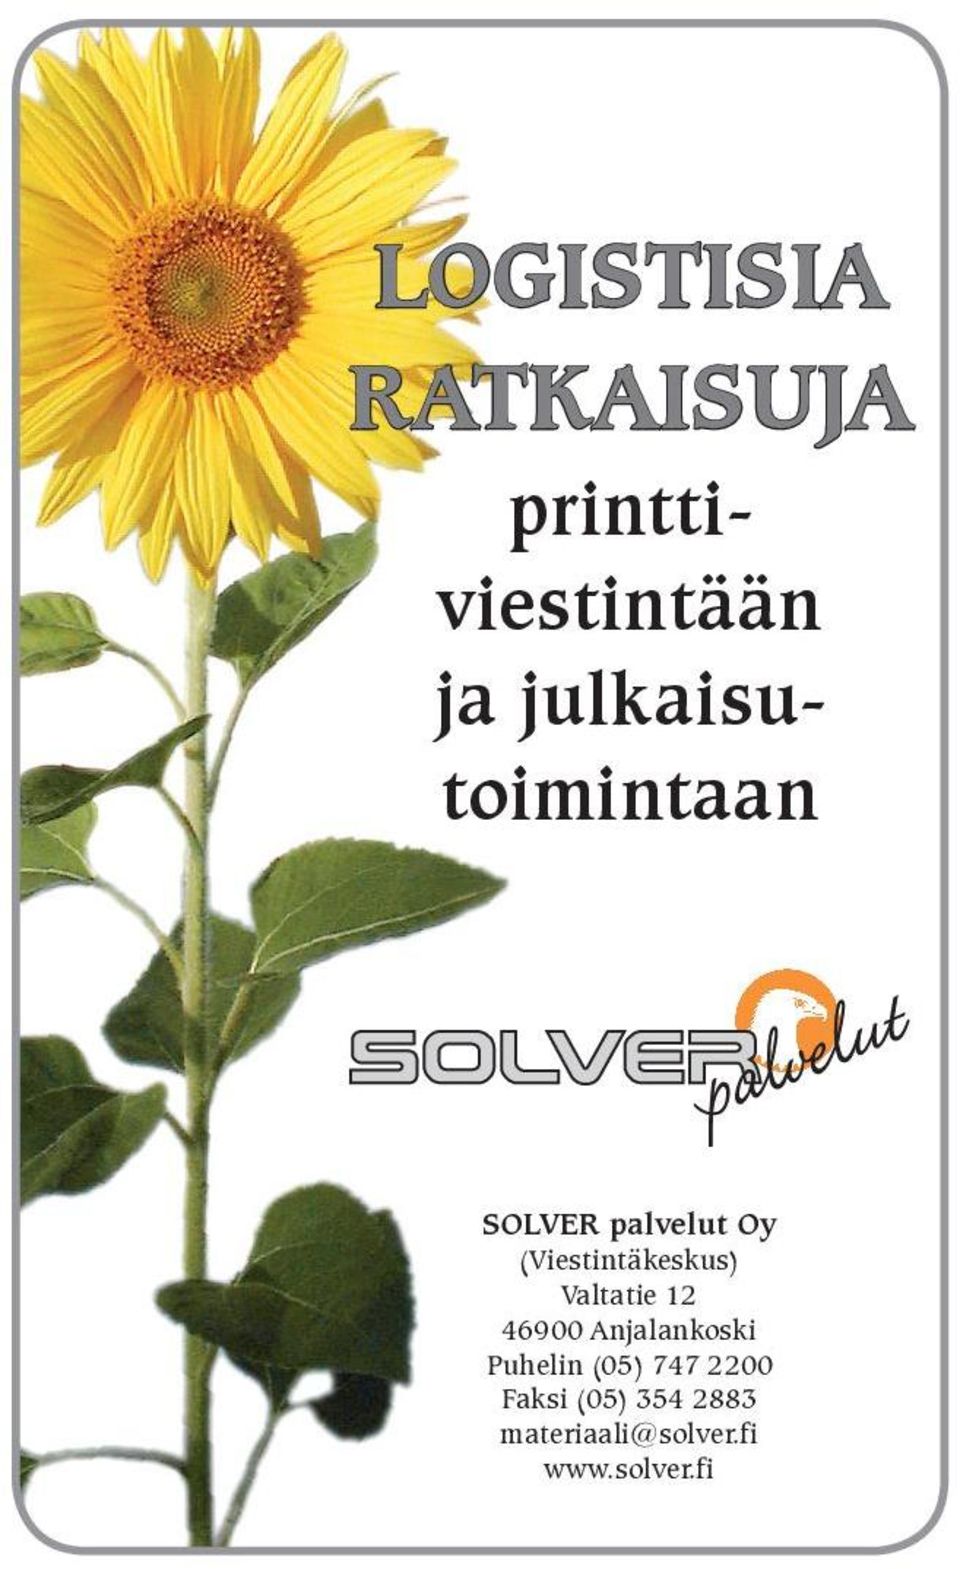 (Viestintäkeskus) Valtatie 12 46900 Anjalankoski